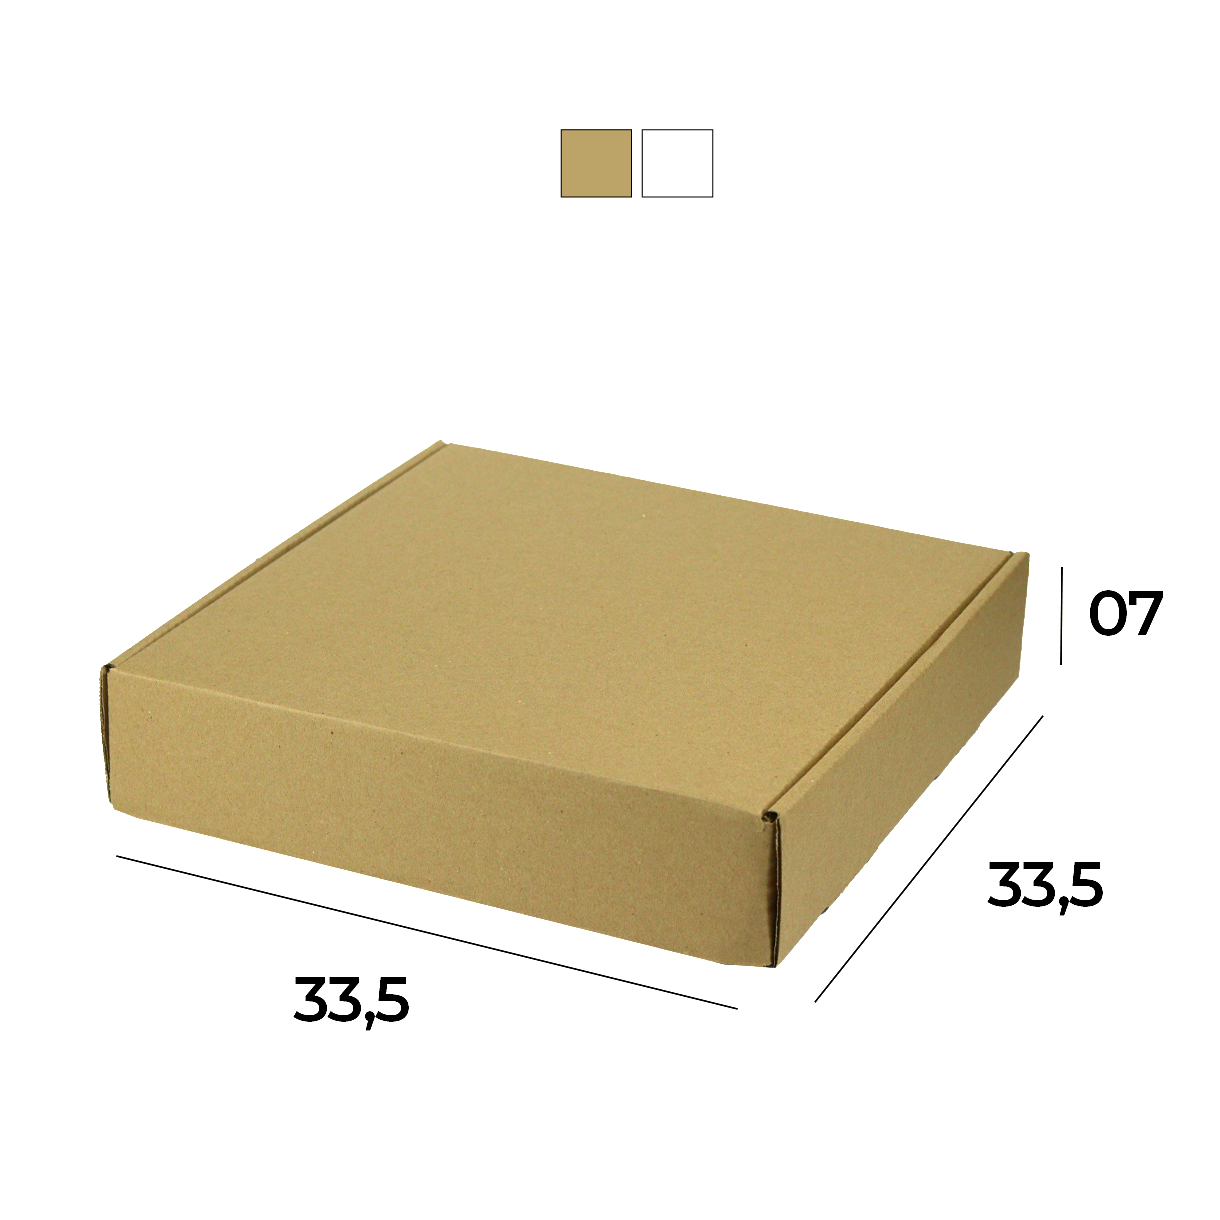 Caixa de Papelão Sedex 20 (33,5x33,5x07) Lisa